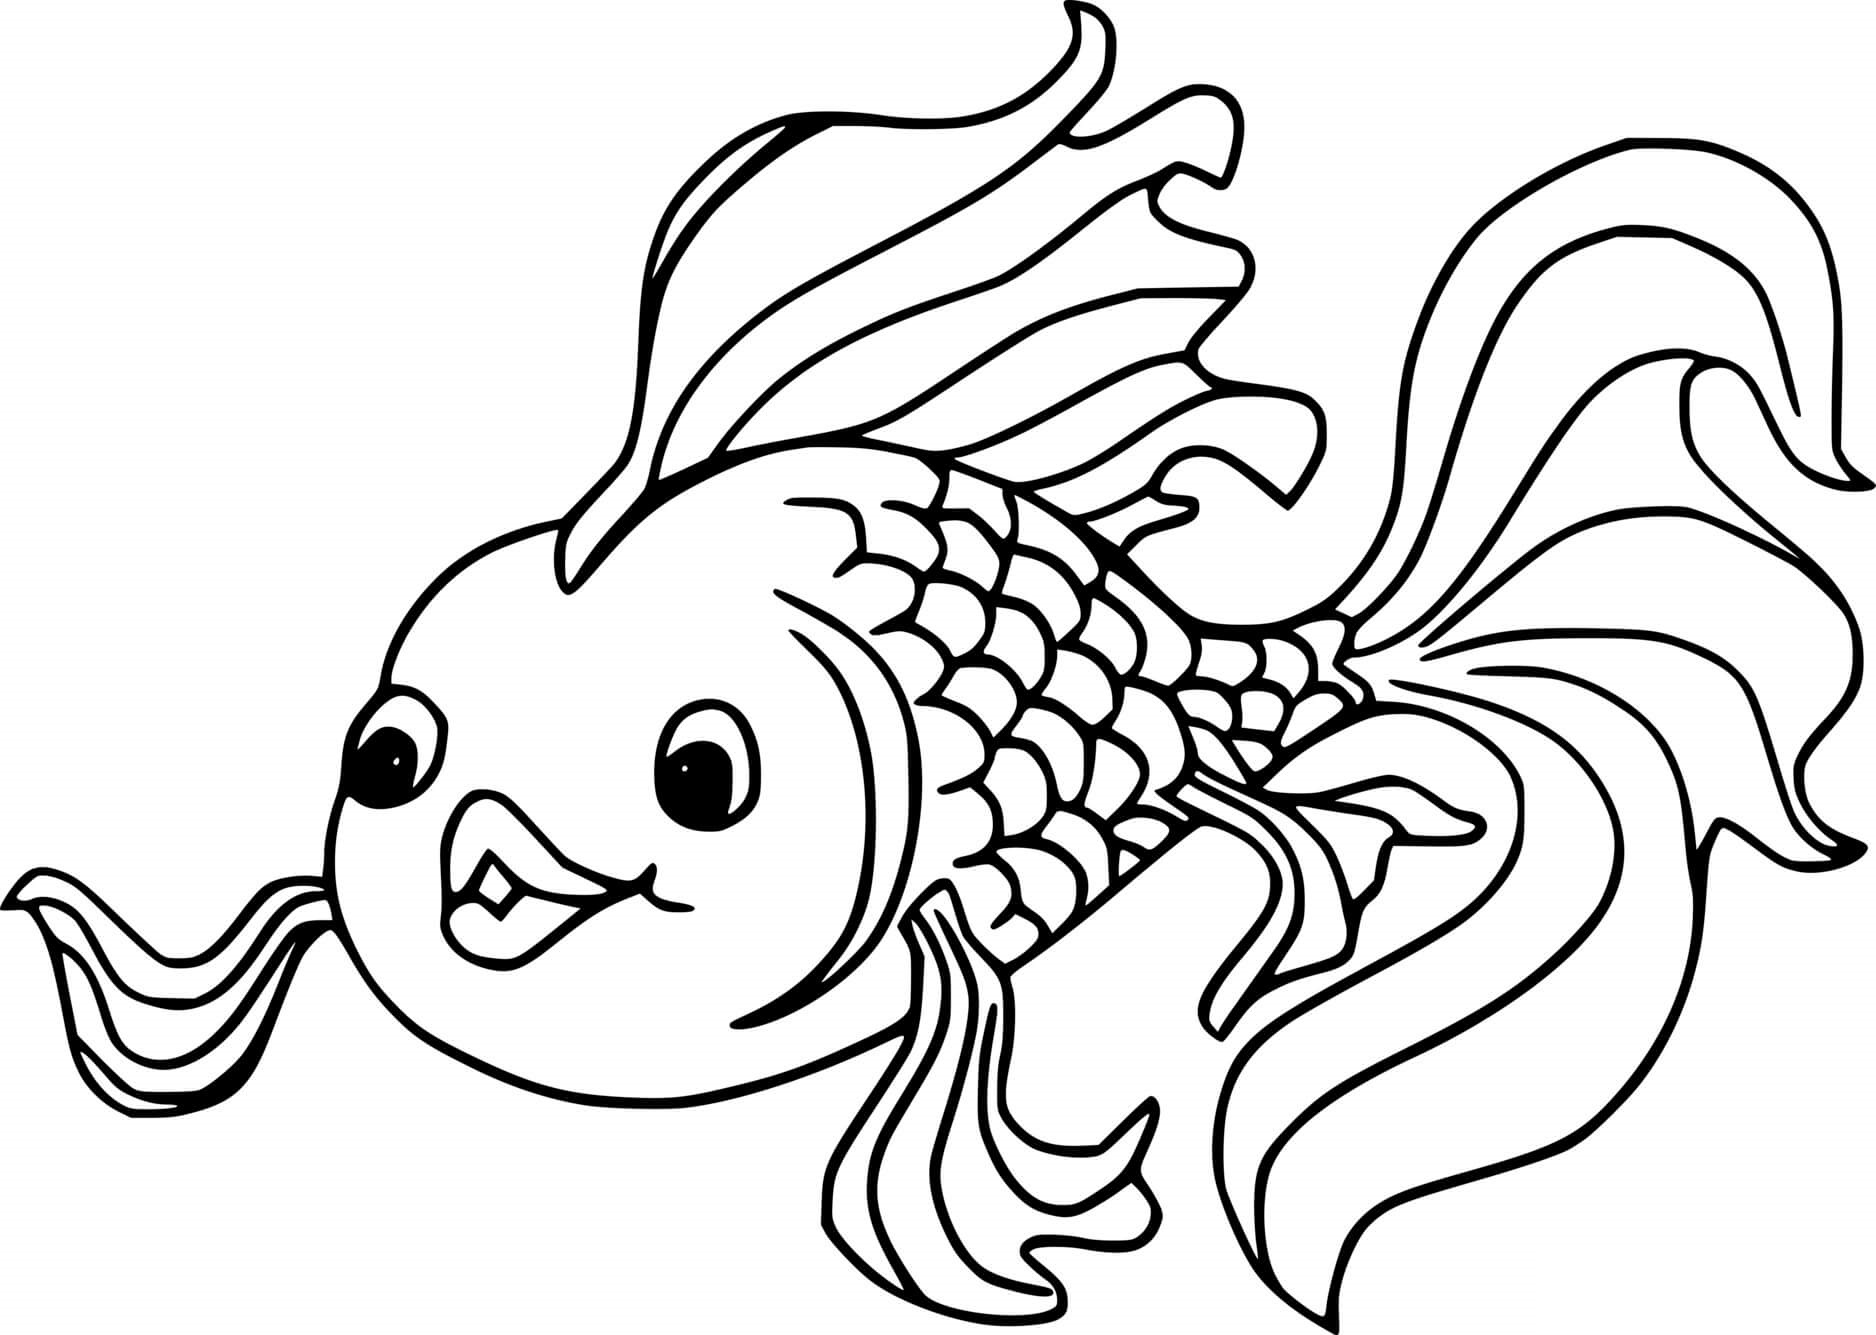 Раскраска рыбки для детей 5 6 лет. Раскраска рыбка. Рыбка раскраска для детей. Золотая рыбка раскраска. Рыба раскраска для детей.